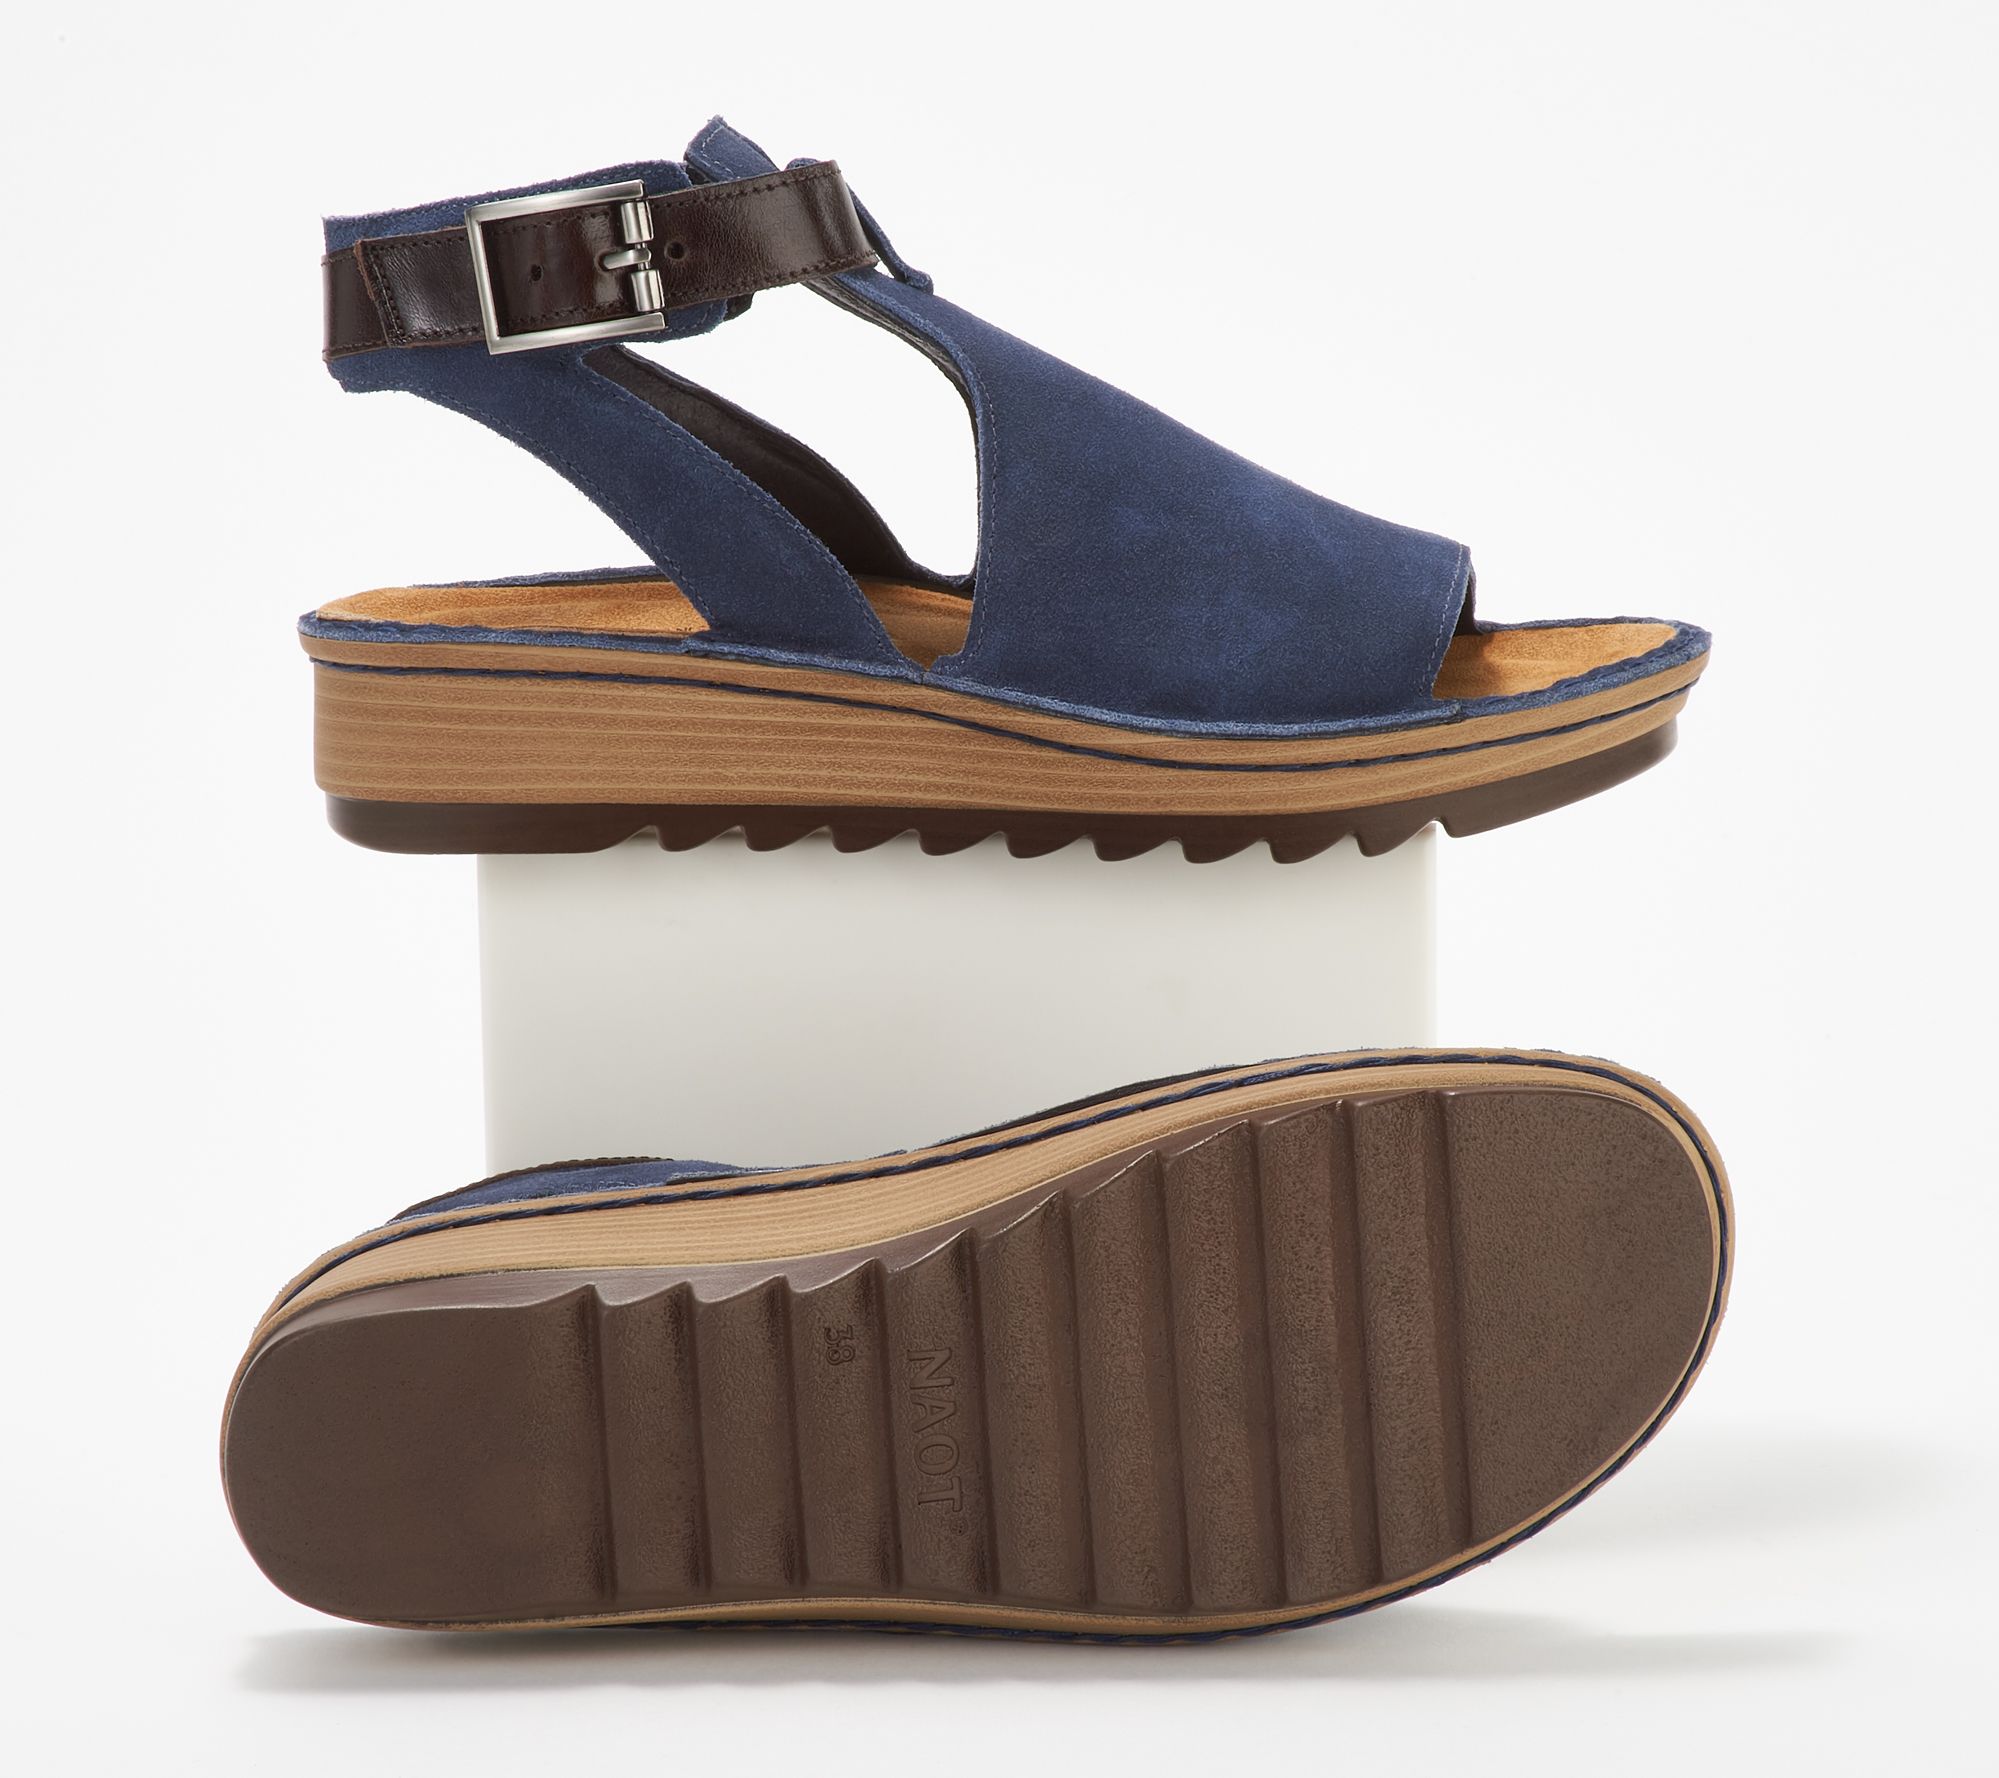 kantsten renhed pie Naot Leather Mule Sandals - Verbena - QVC.com